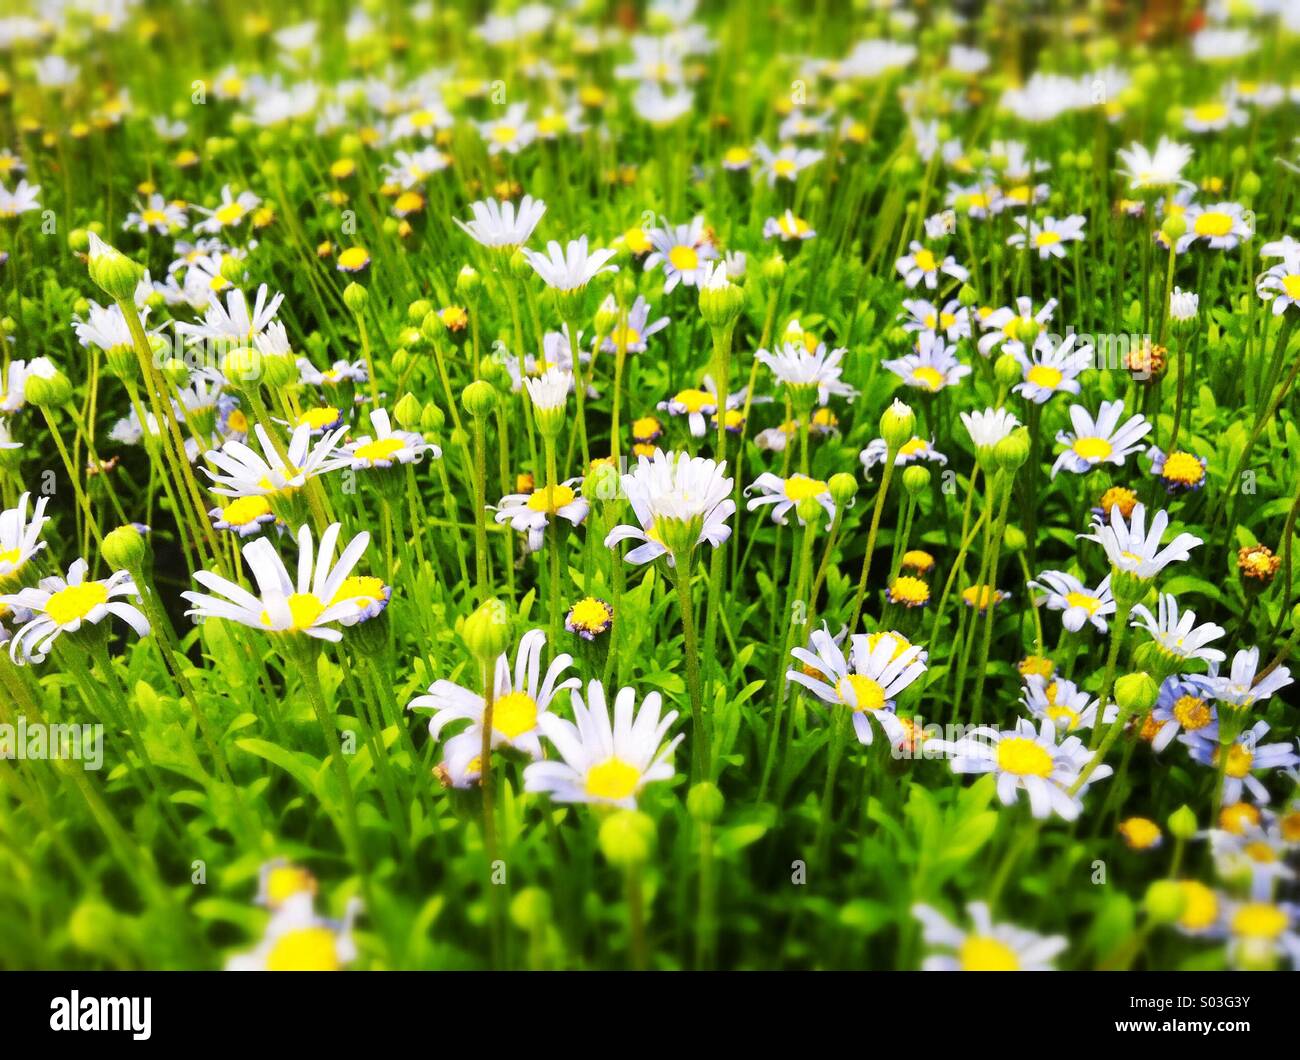 Daisy field Stock Photo